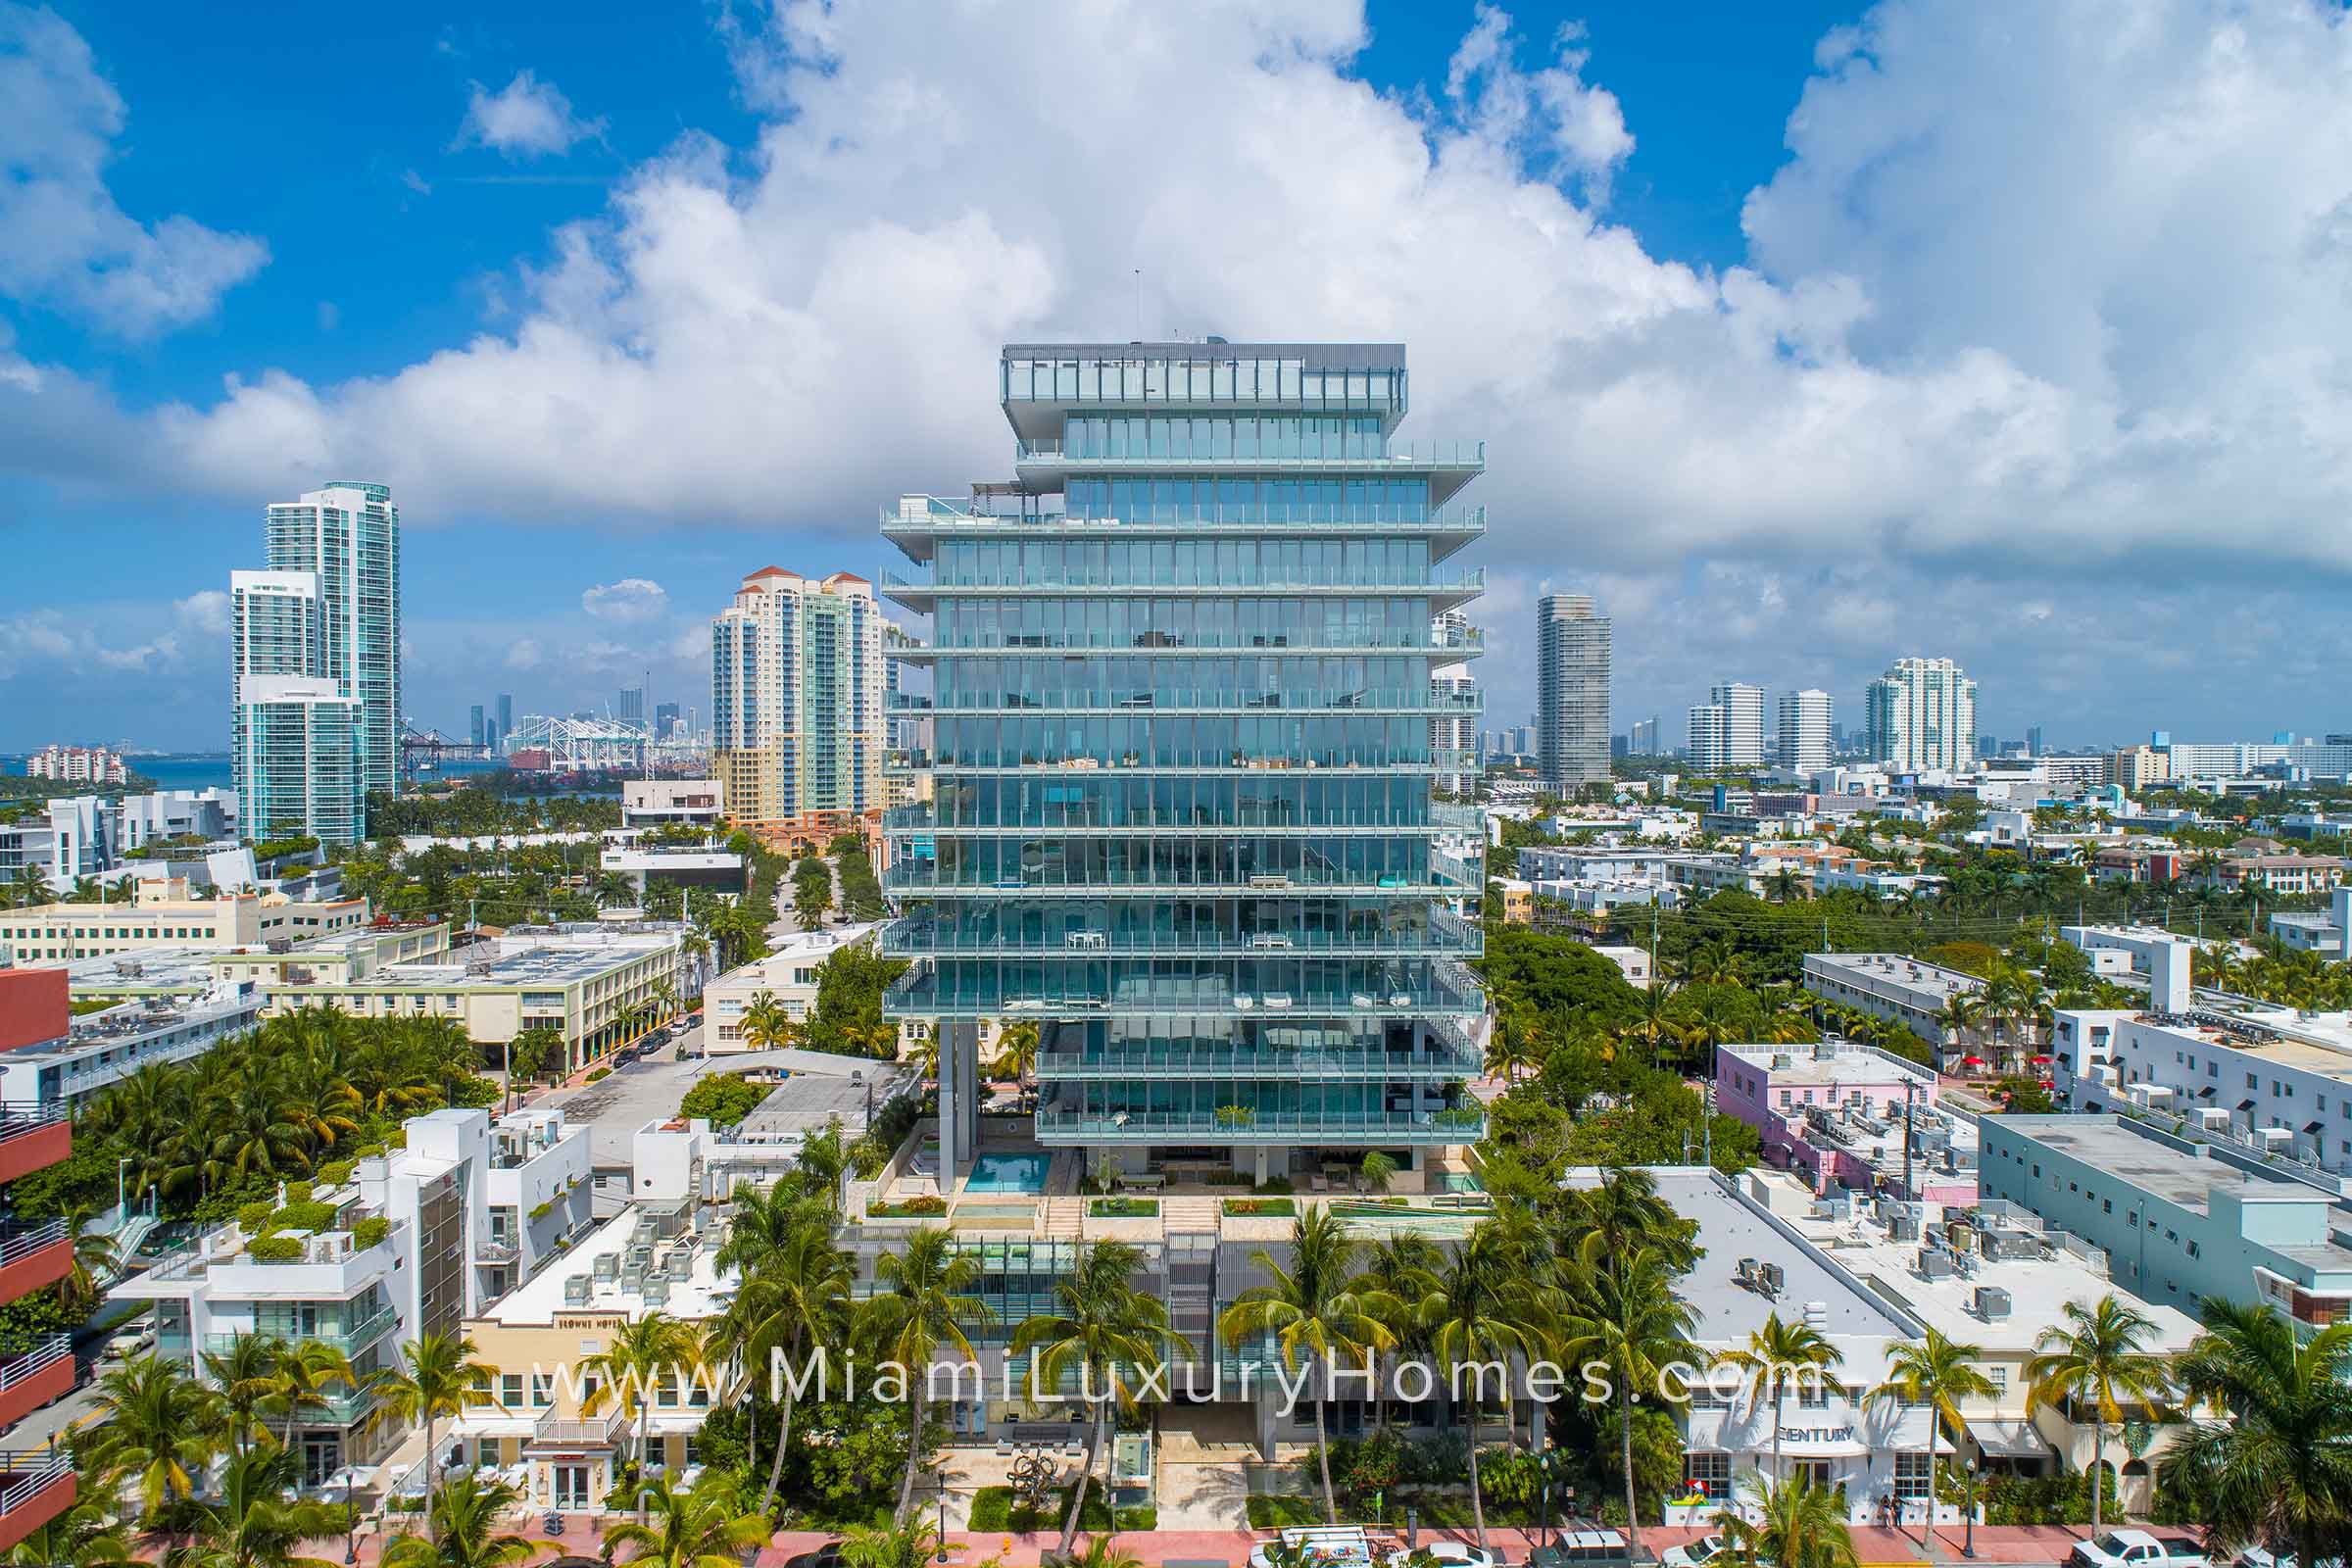 Glass Miami Beach Condo Building